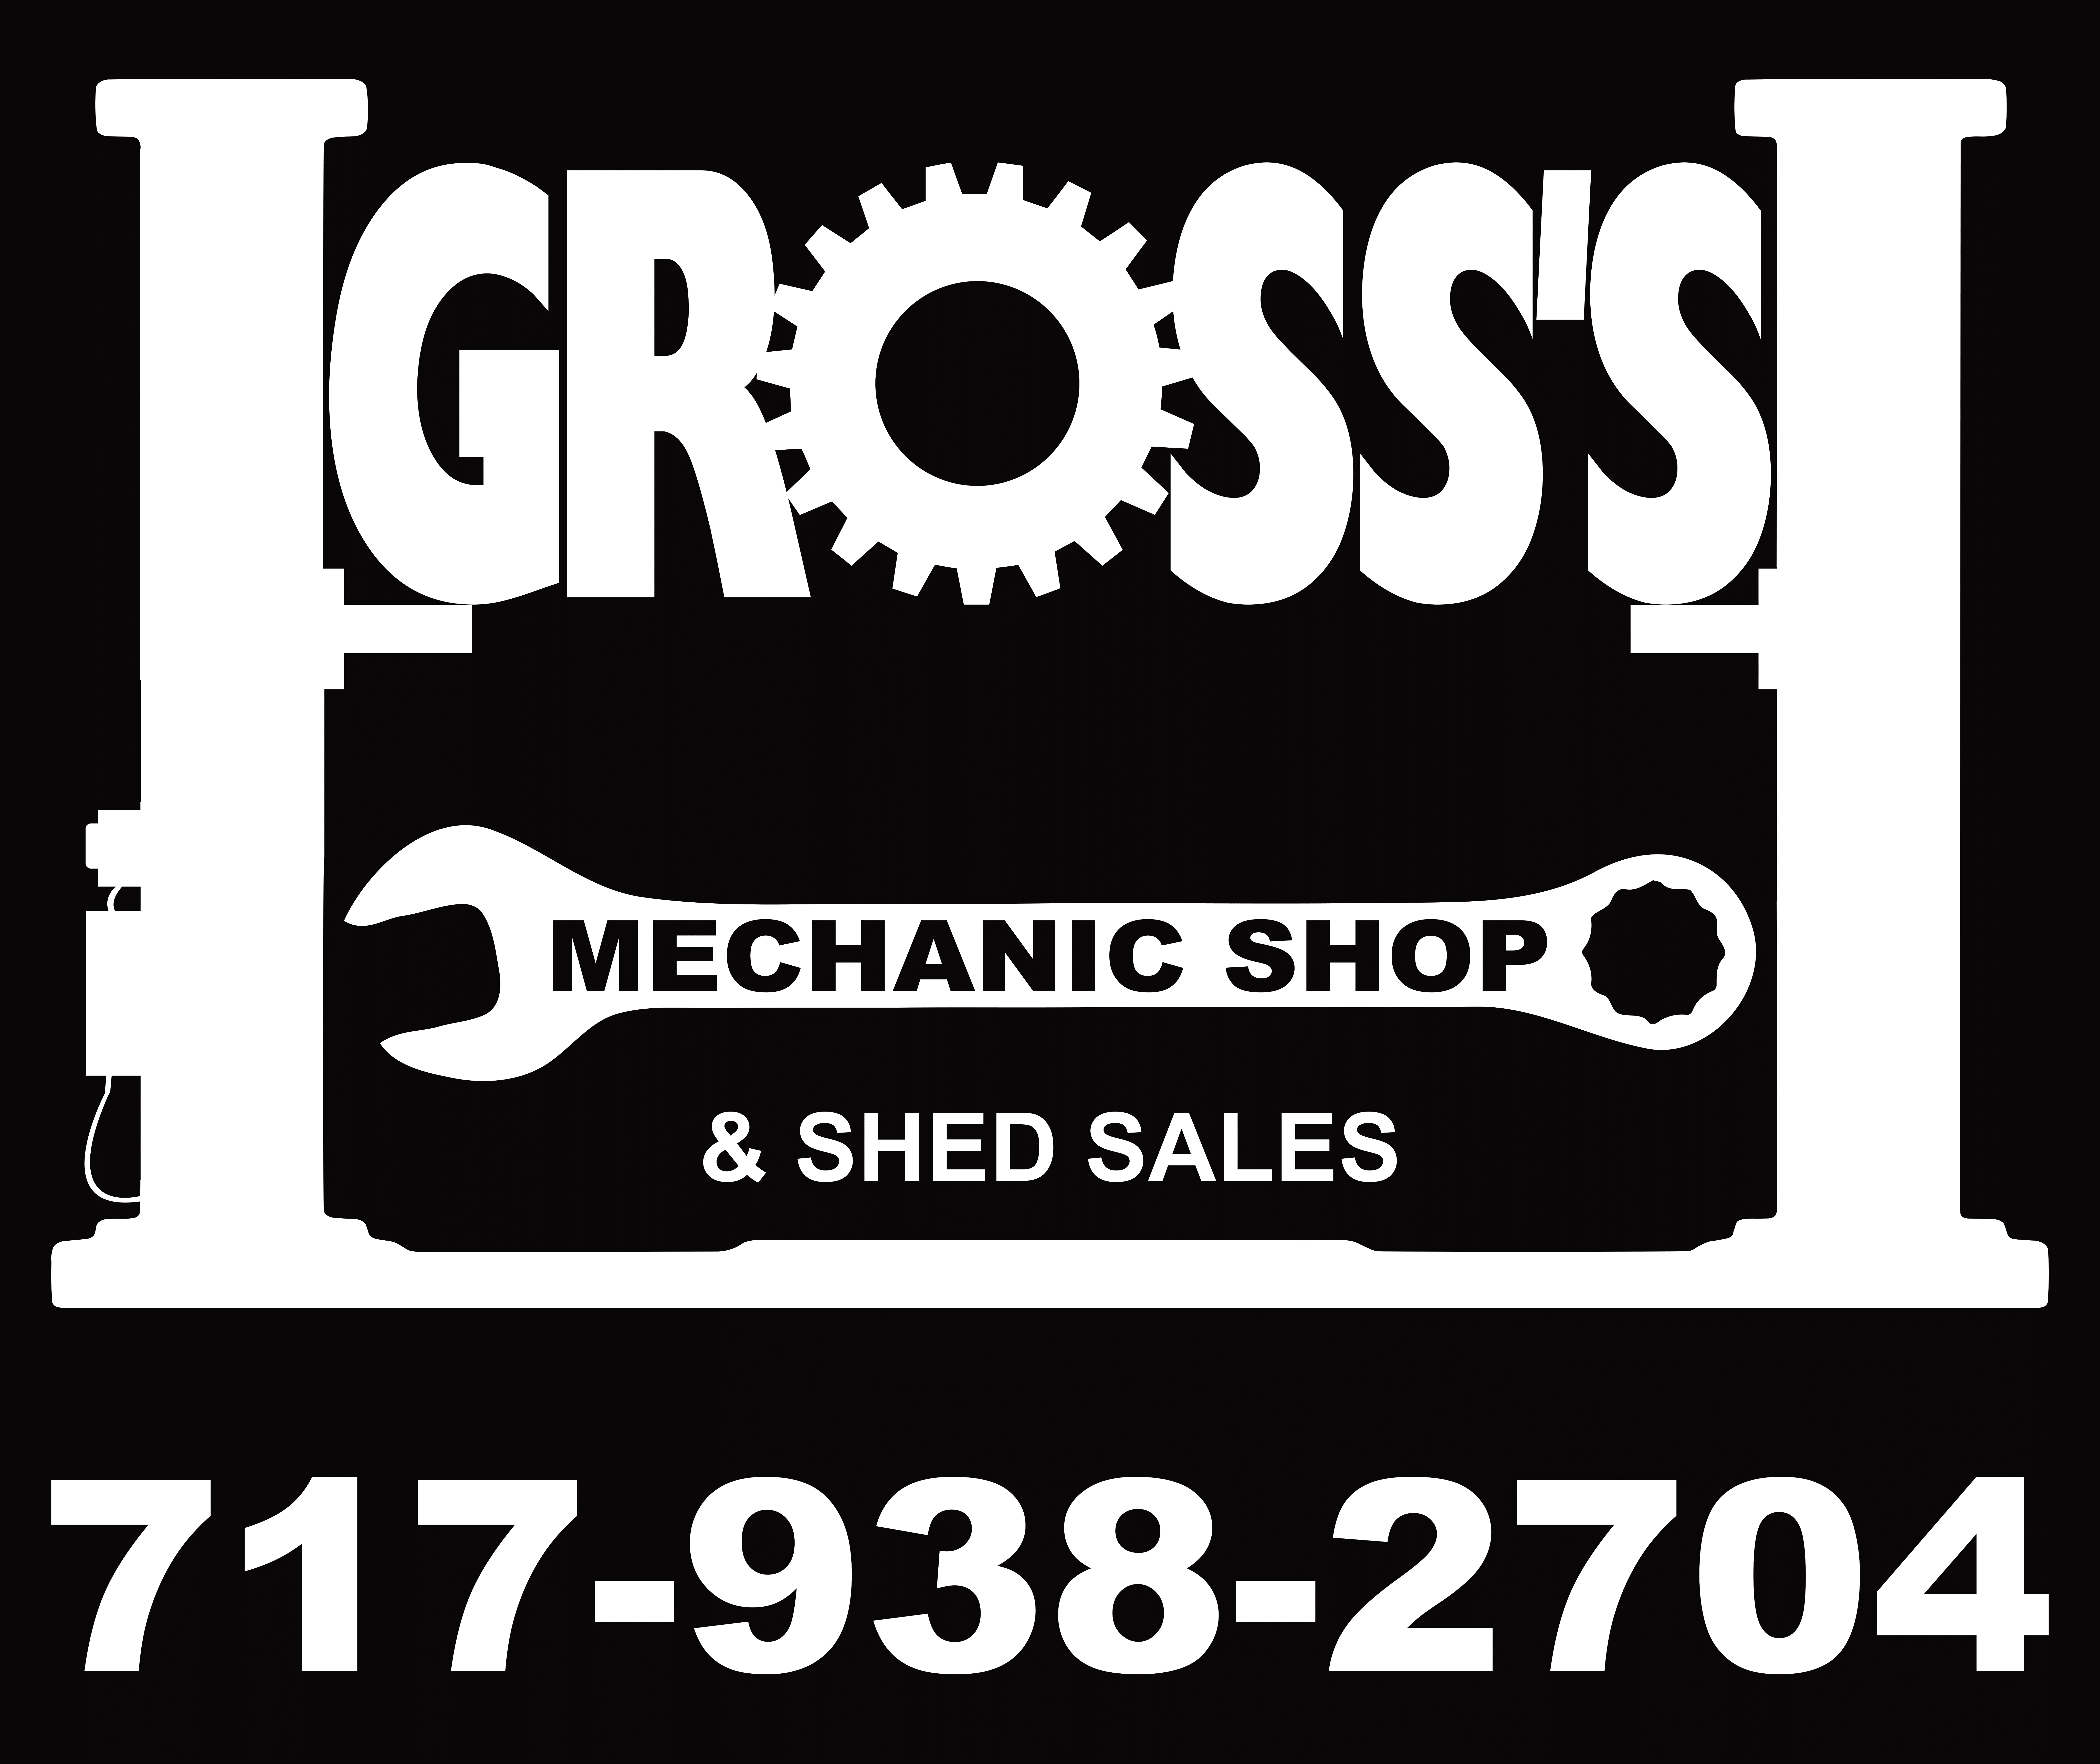 Gross's Mechanic Shop